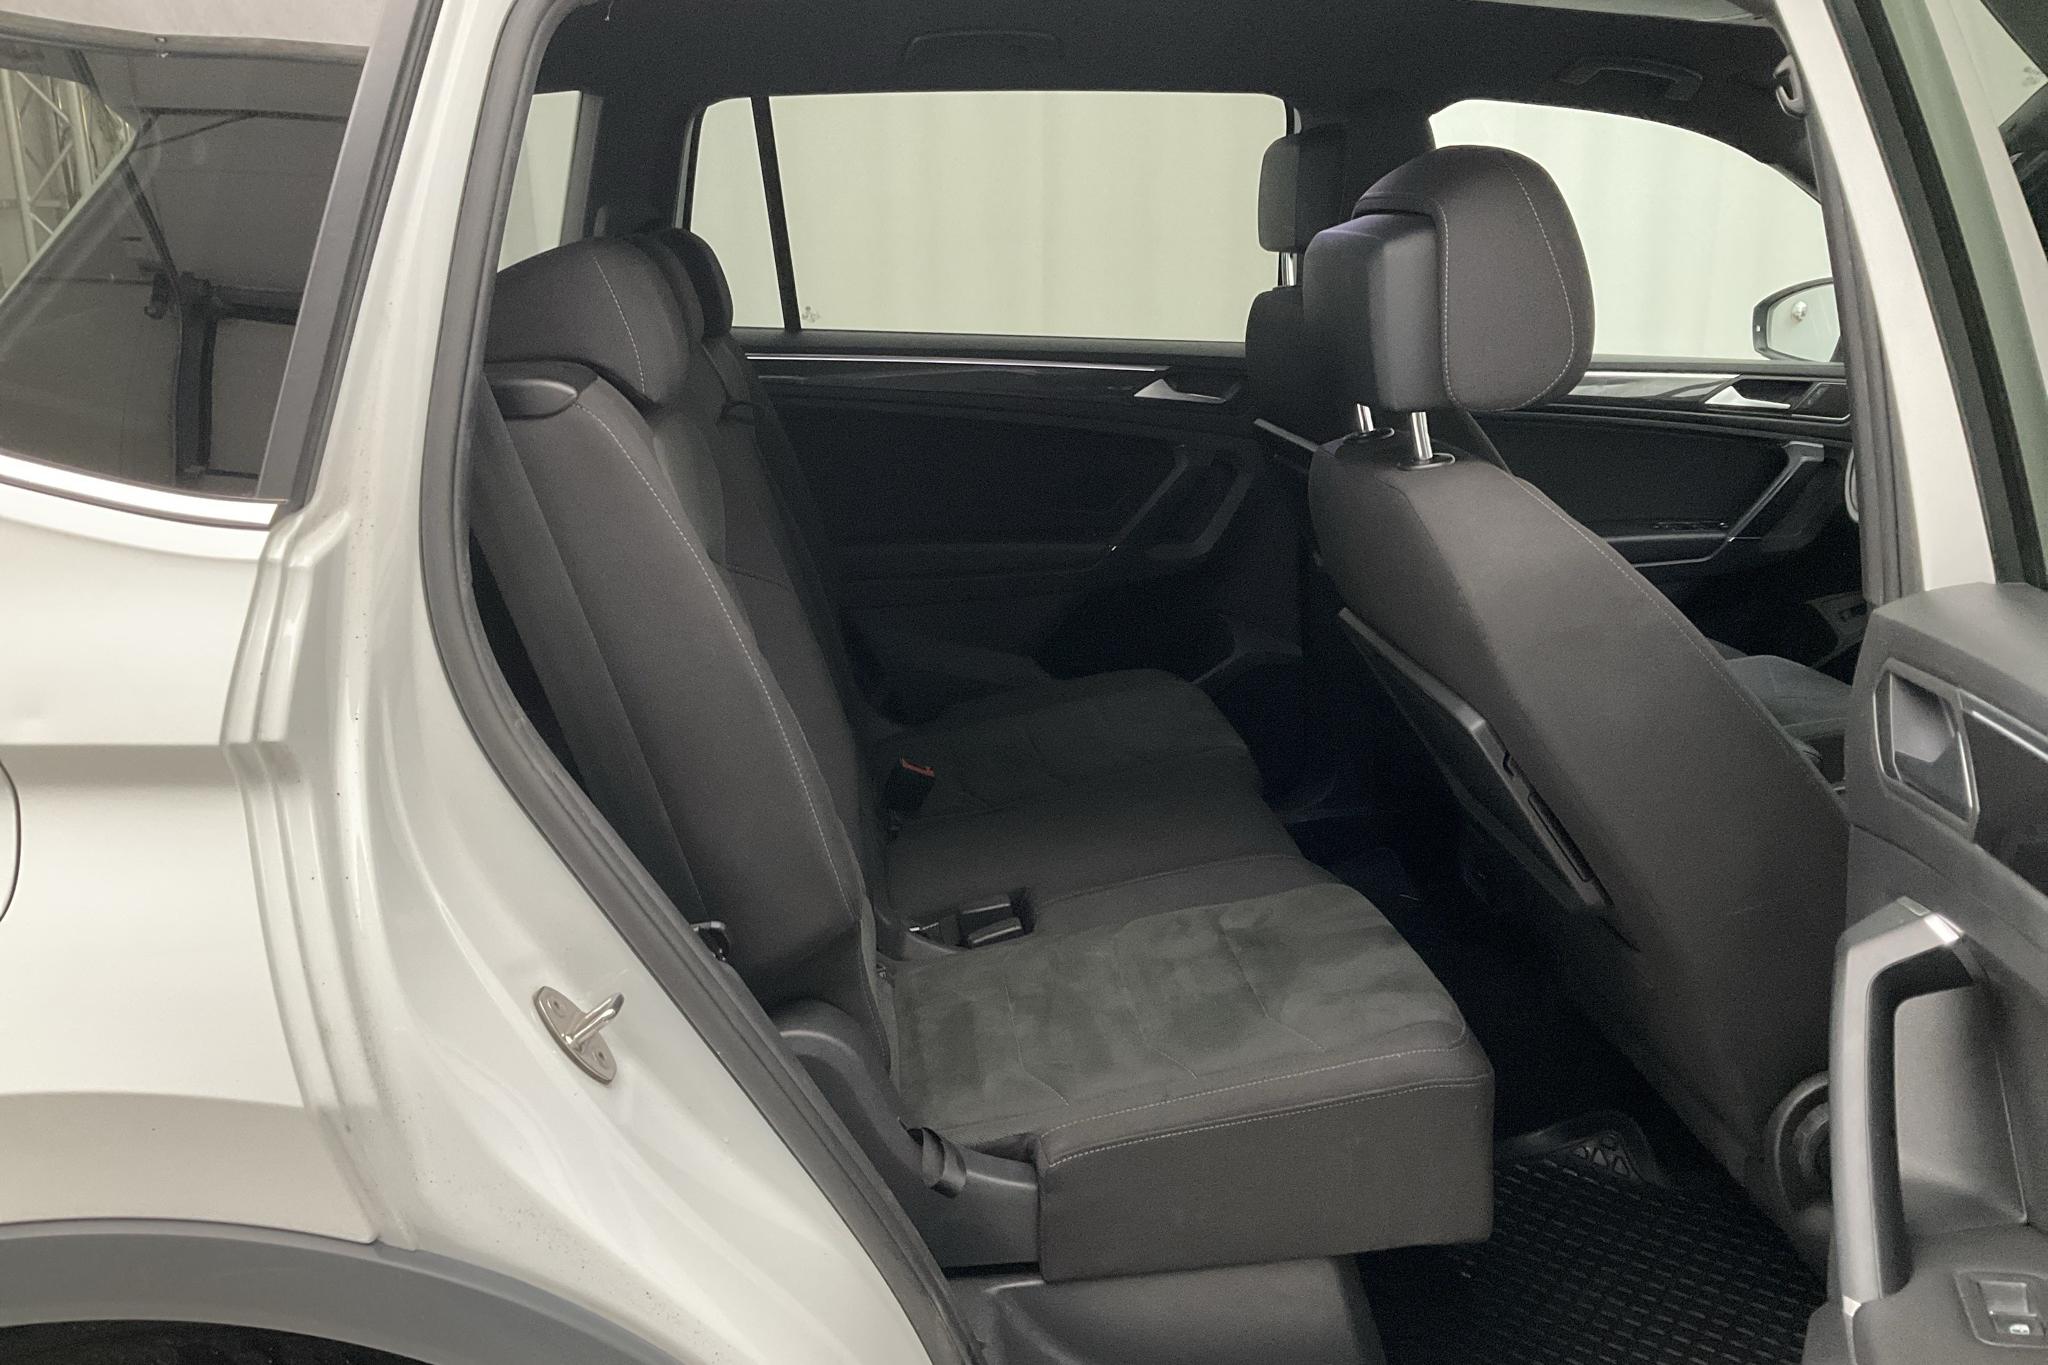 VW Tiguan Allspace 2.0 TDI 4MOTION (190hk) - 157 290 km - Automatic - white - 2020